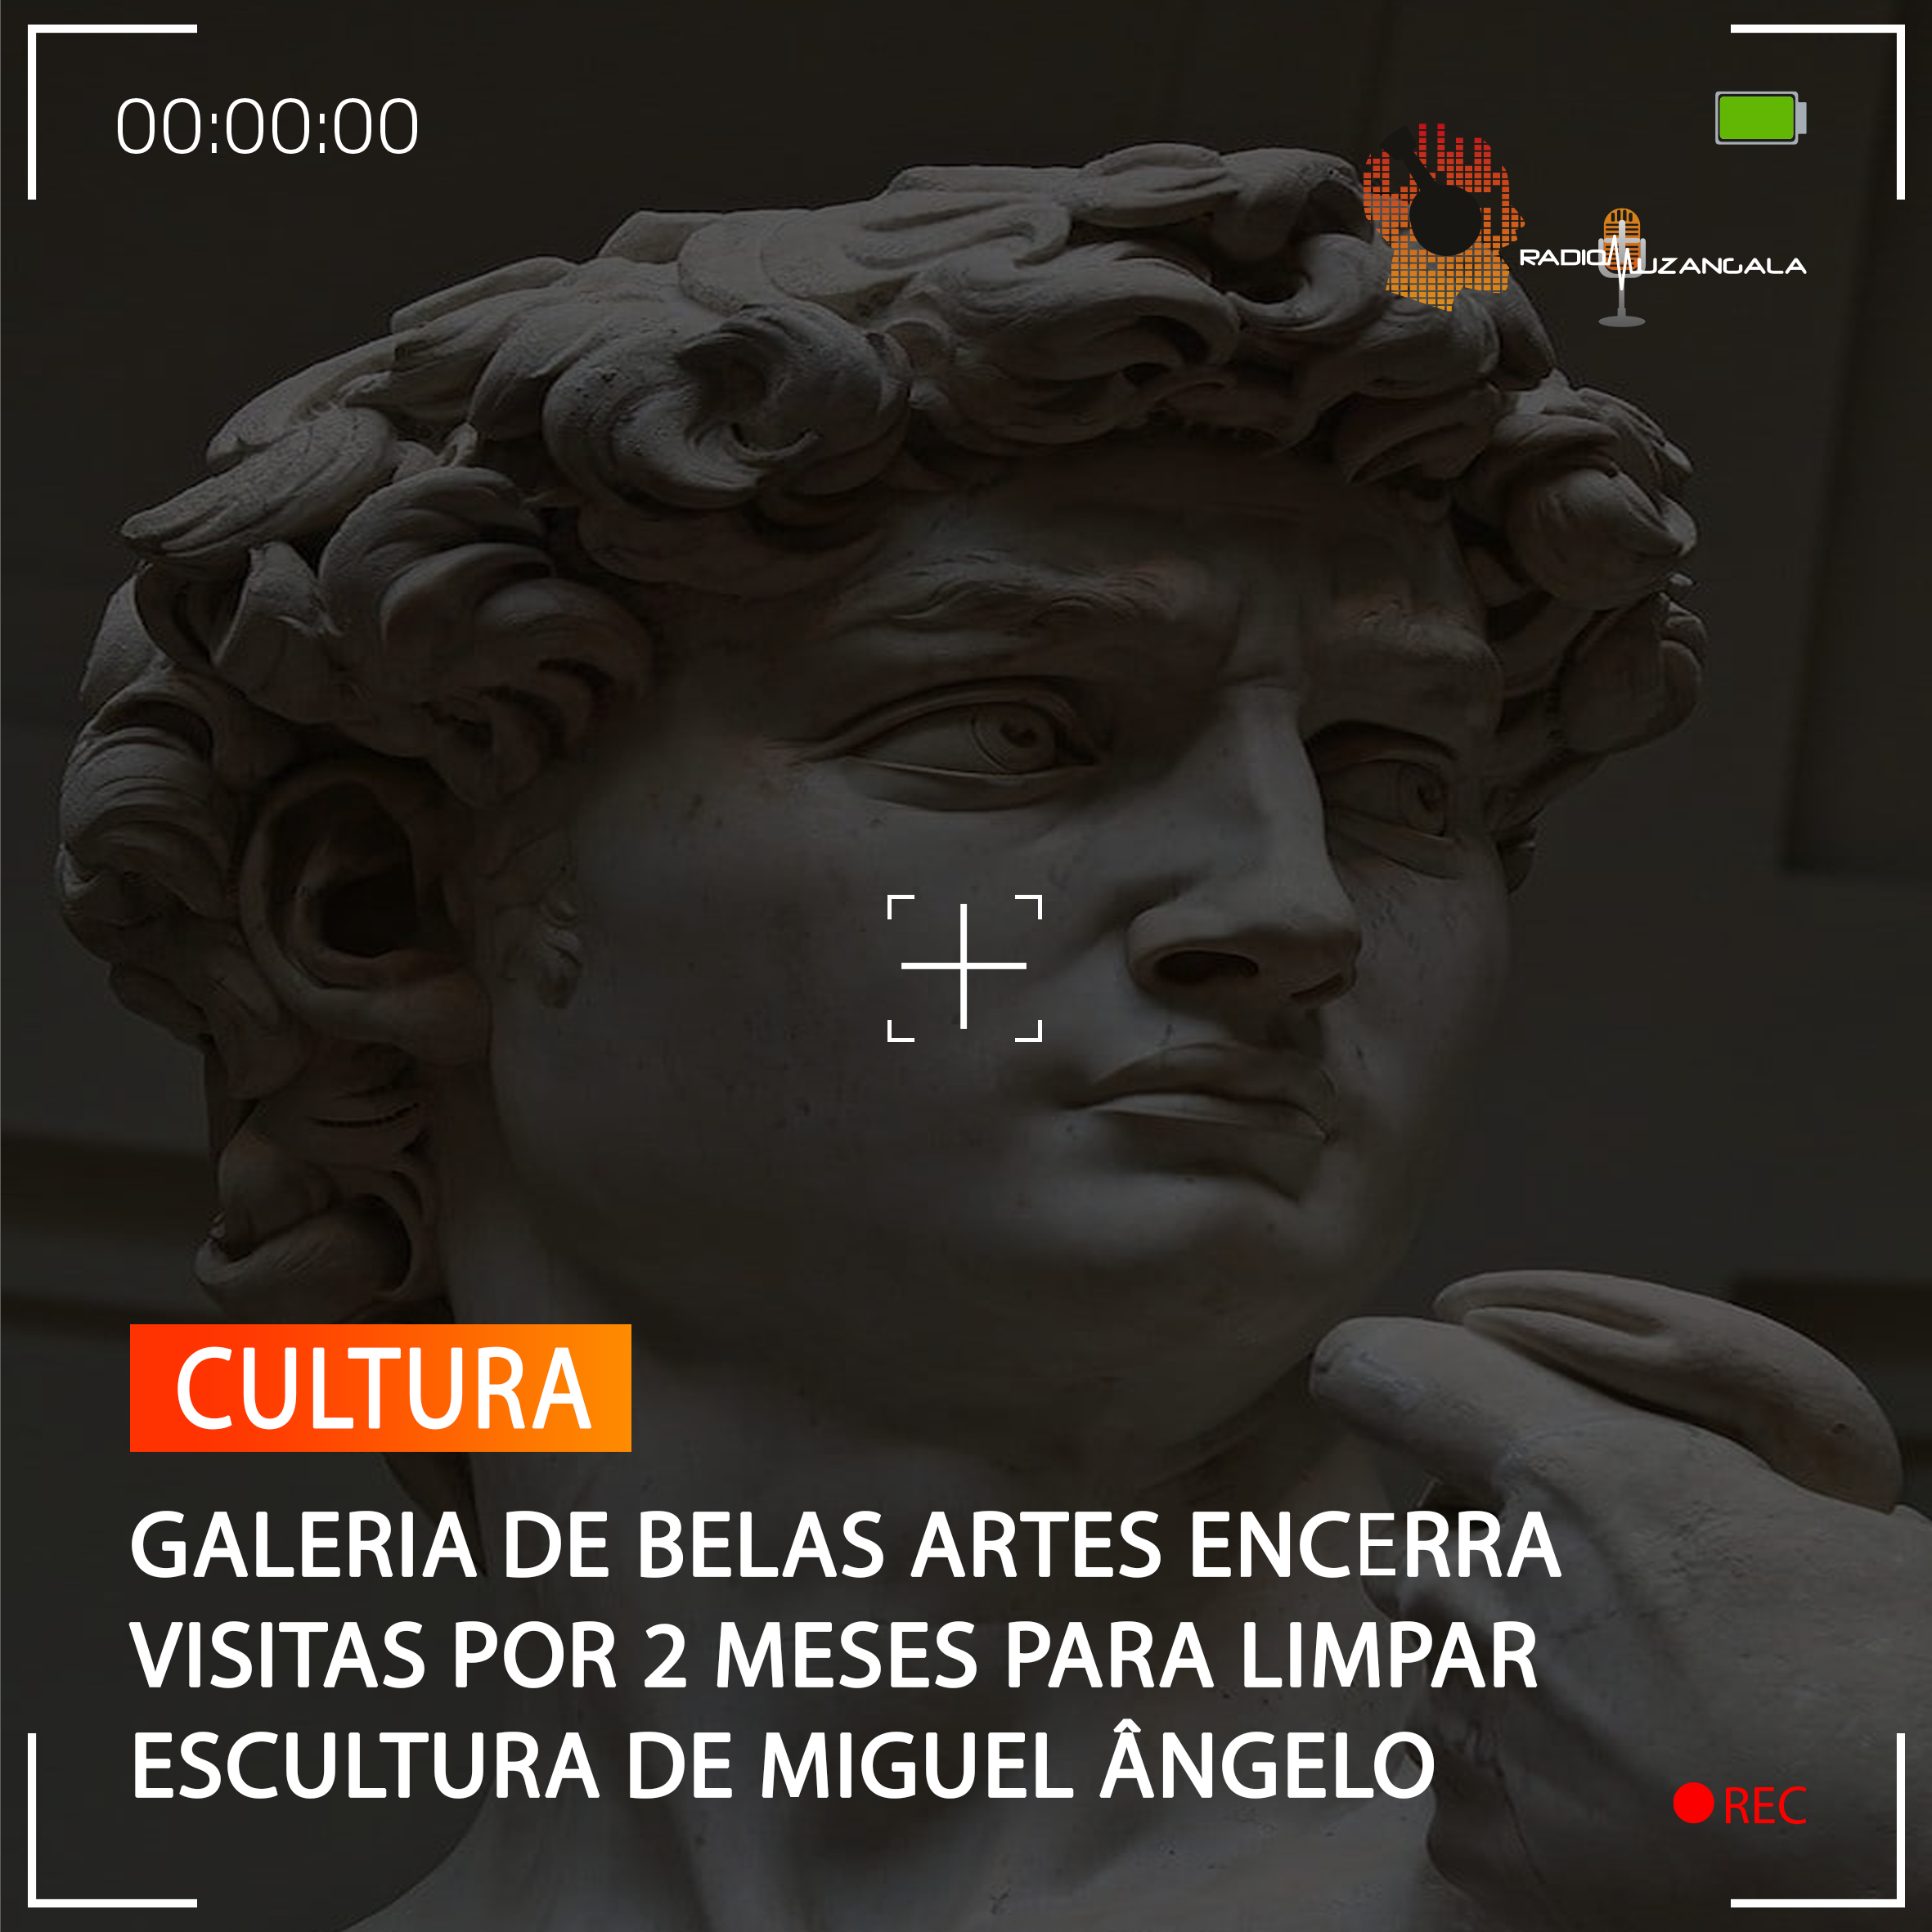  GALERIA DE BELAS ARTES ENCERRA VISITAS POR 2 MESES PARA LIMPAR ESCULTURA DE MIGUEL ÂNGELO